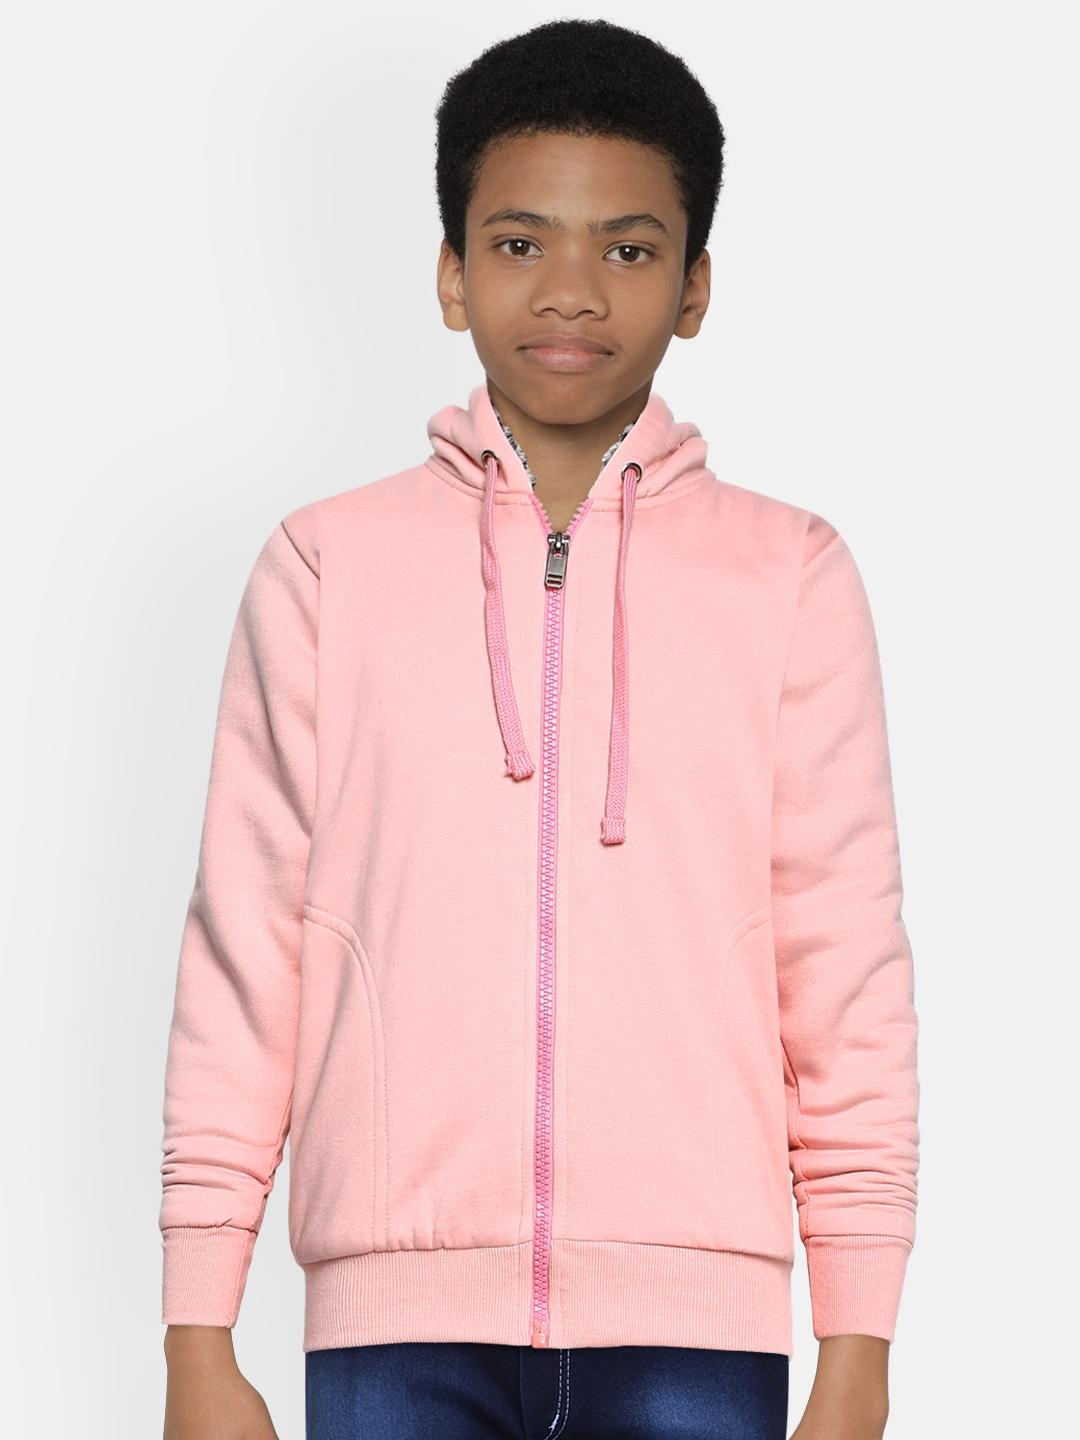 ADBUCKS Boys Pink Solid Hooded Sweatshirt